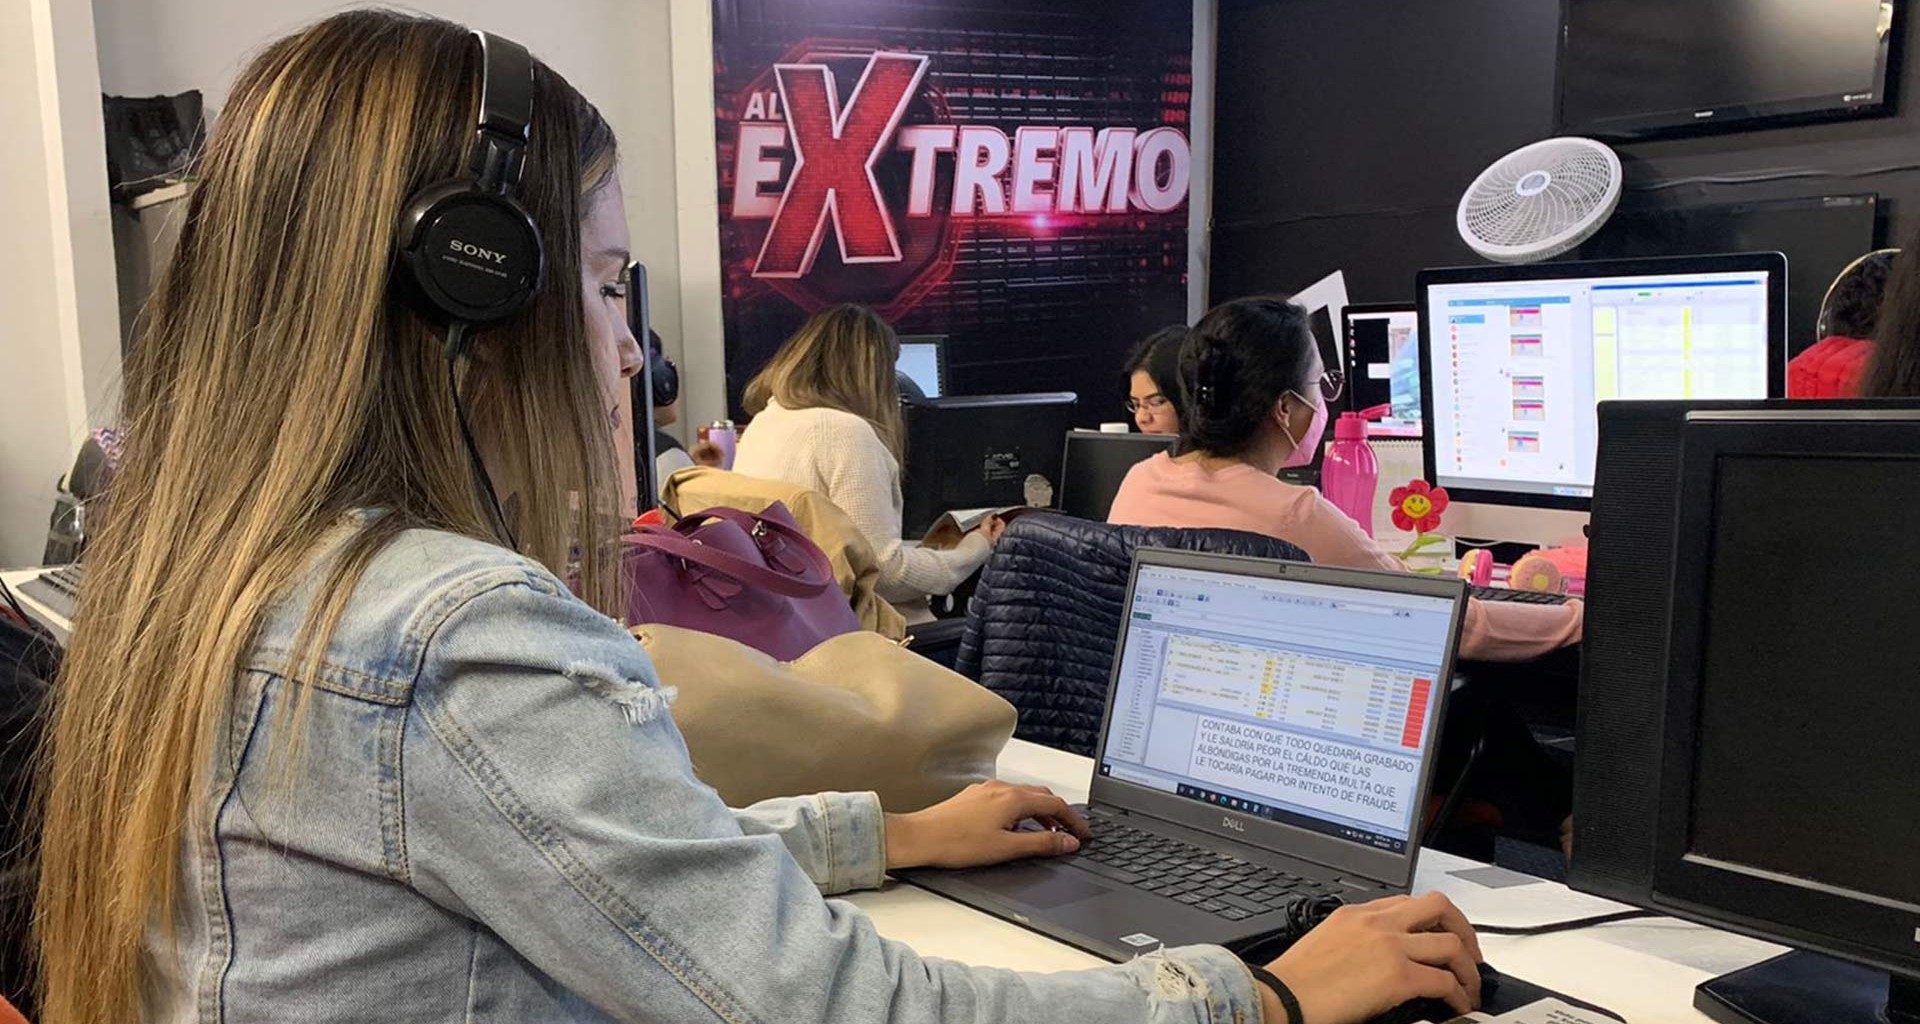 Kariana Colmenero trabaja en el programa de TV Al Extremo